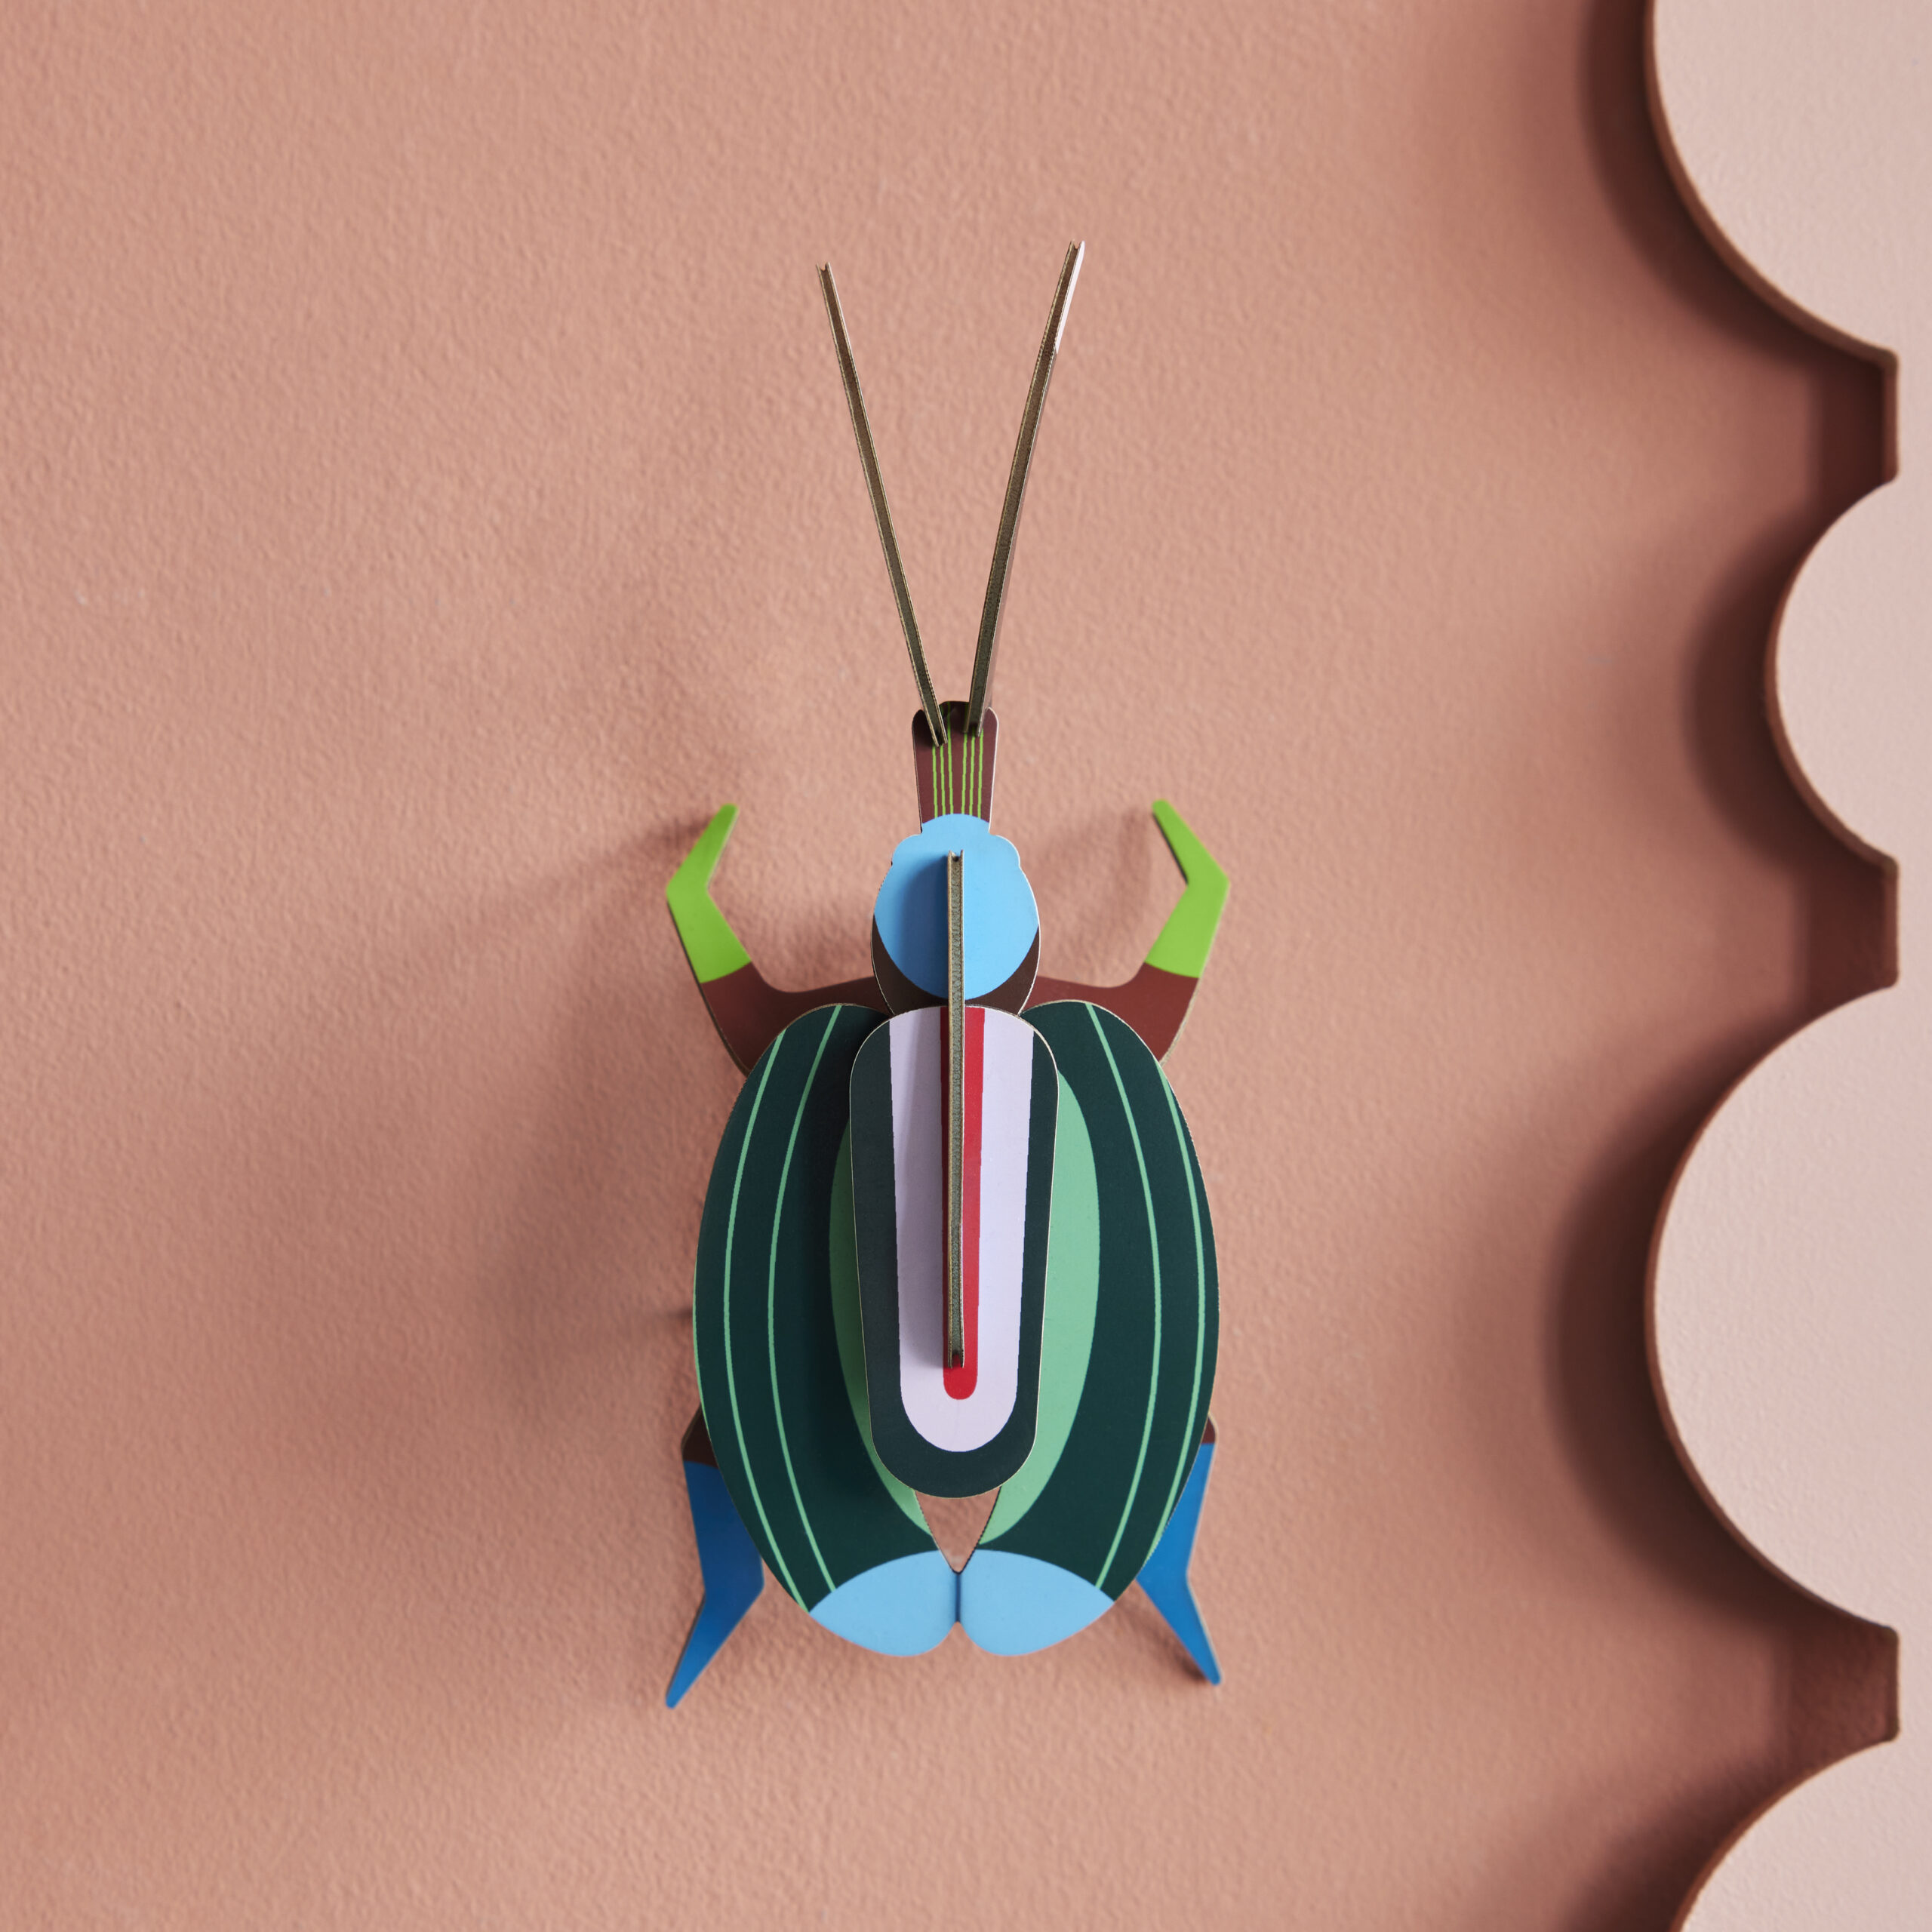 Green Fig Beetle - Grüner Feigenkaefer mit Streifen aus Papier in 3D als Wanddekoration von der Firma studio Roof auf rosa Wand